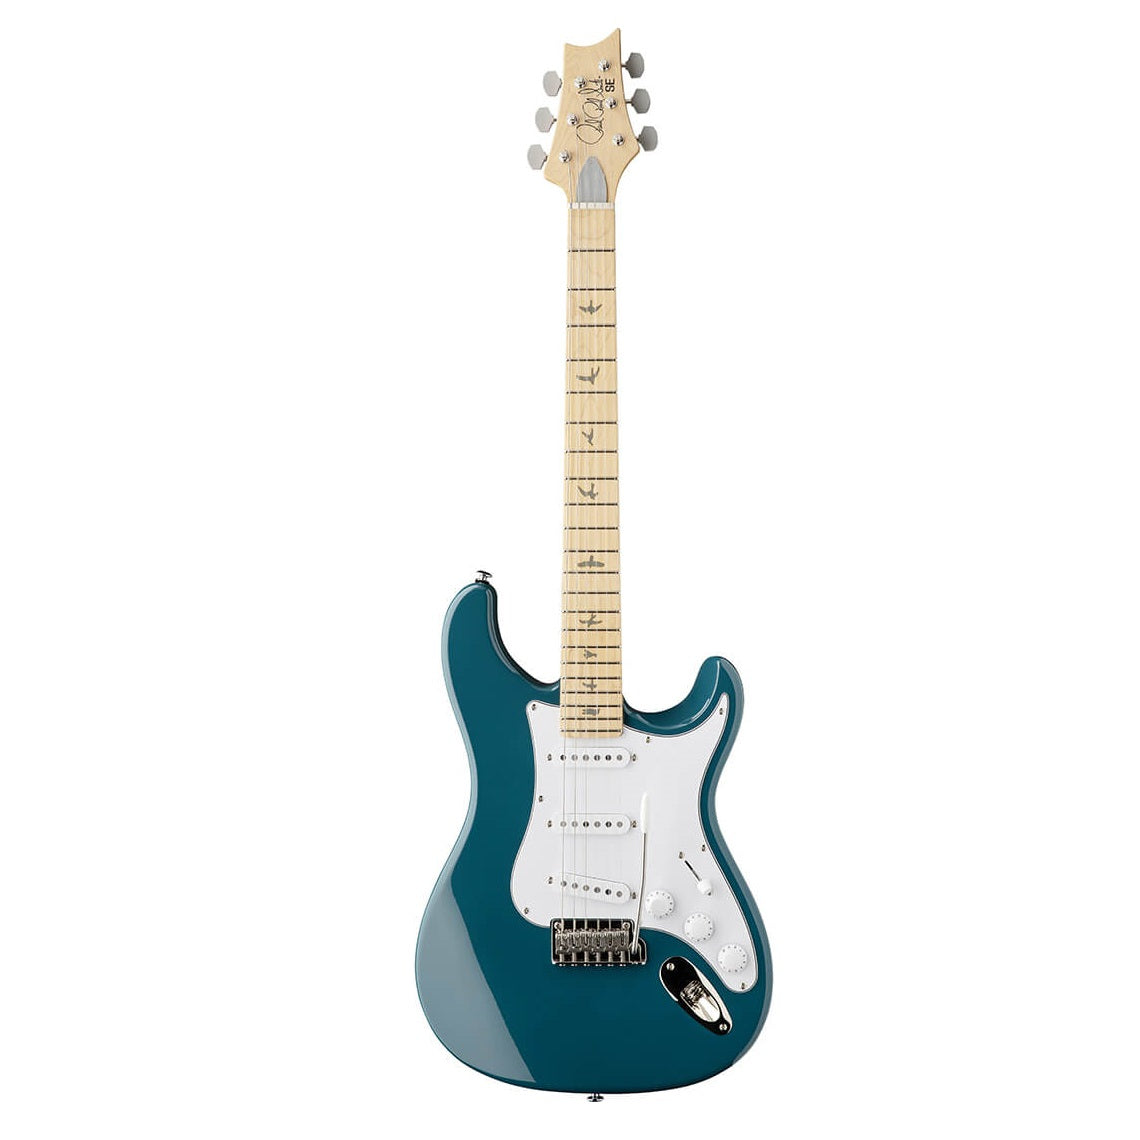 PRS SE Silver Sky J2M6J John Mayer Signature Electric Guitar - Nylon Blue Finish | Musical Instruments | Musical Instruments, Musical Instruments. Musical Instruments: Electric Guitar, Musical Instruments. Musical Instruments: Guitars | PRS